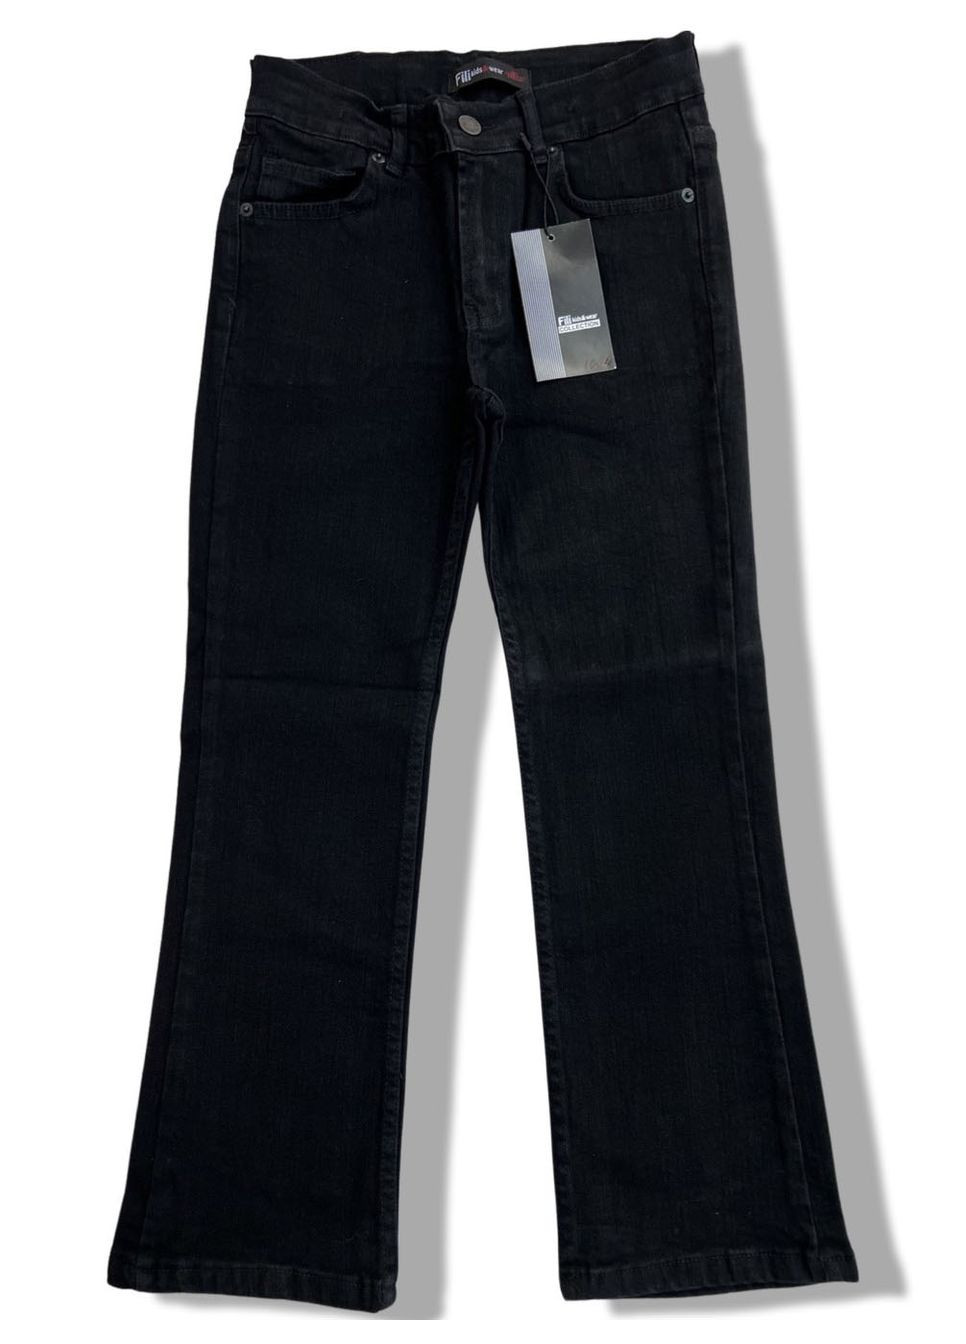 Черные демисезонные джинсы клёш для девочки fili kids синие 1004 146 см No Brand